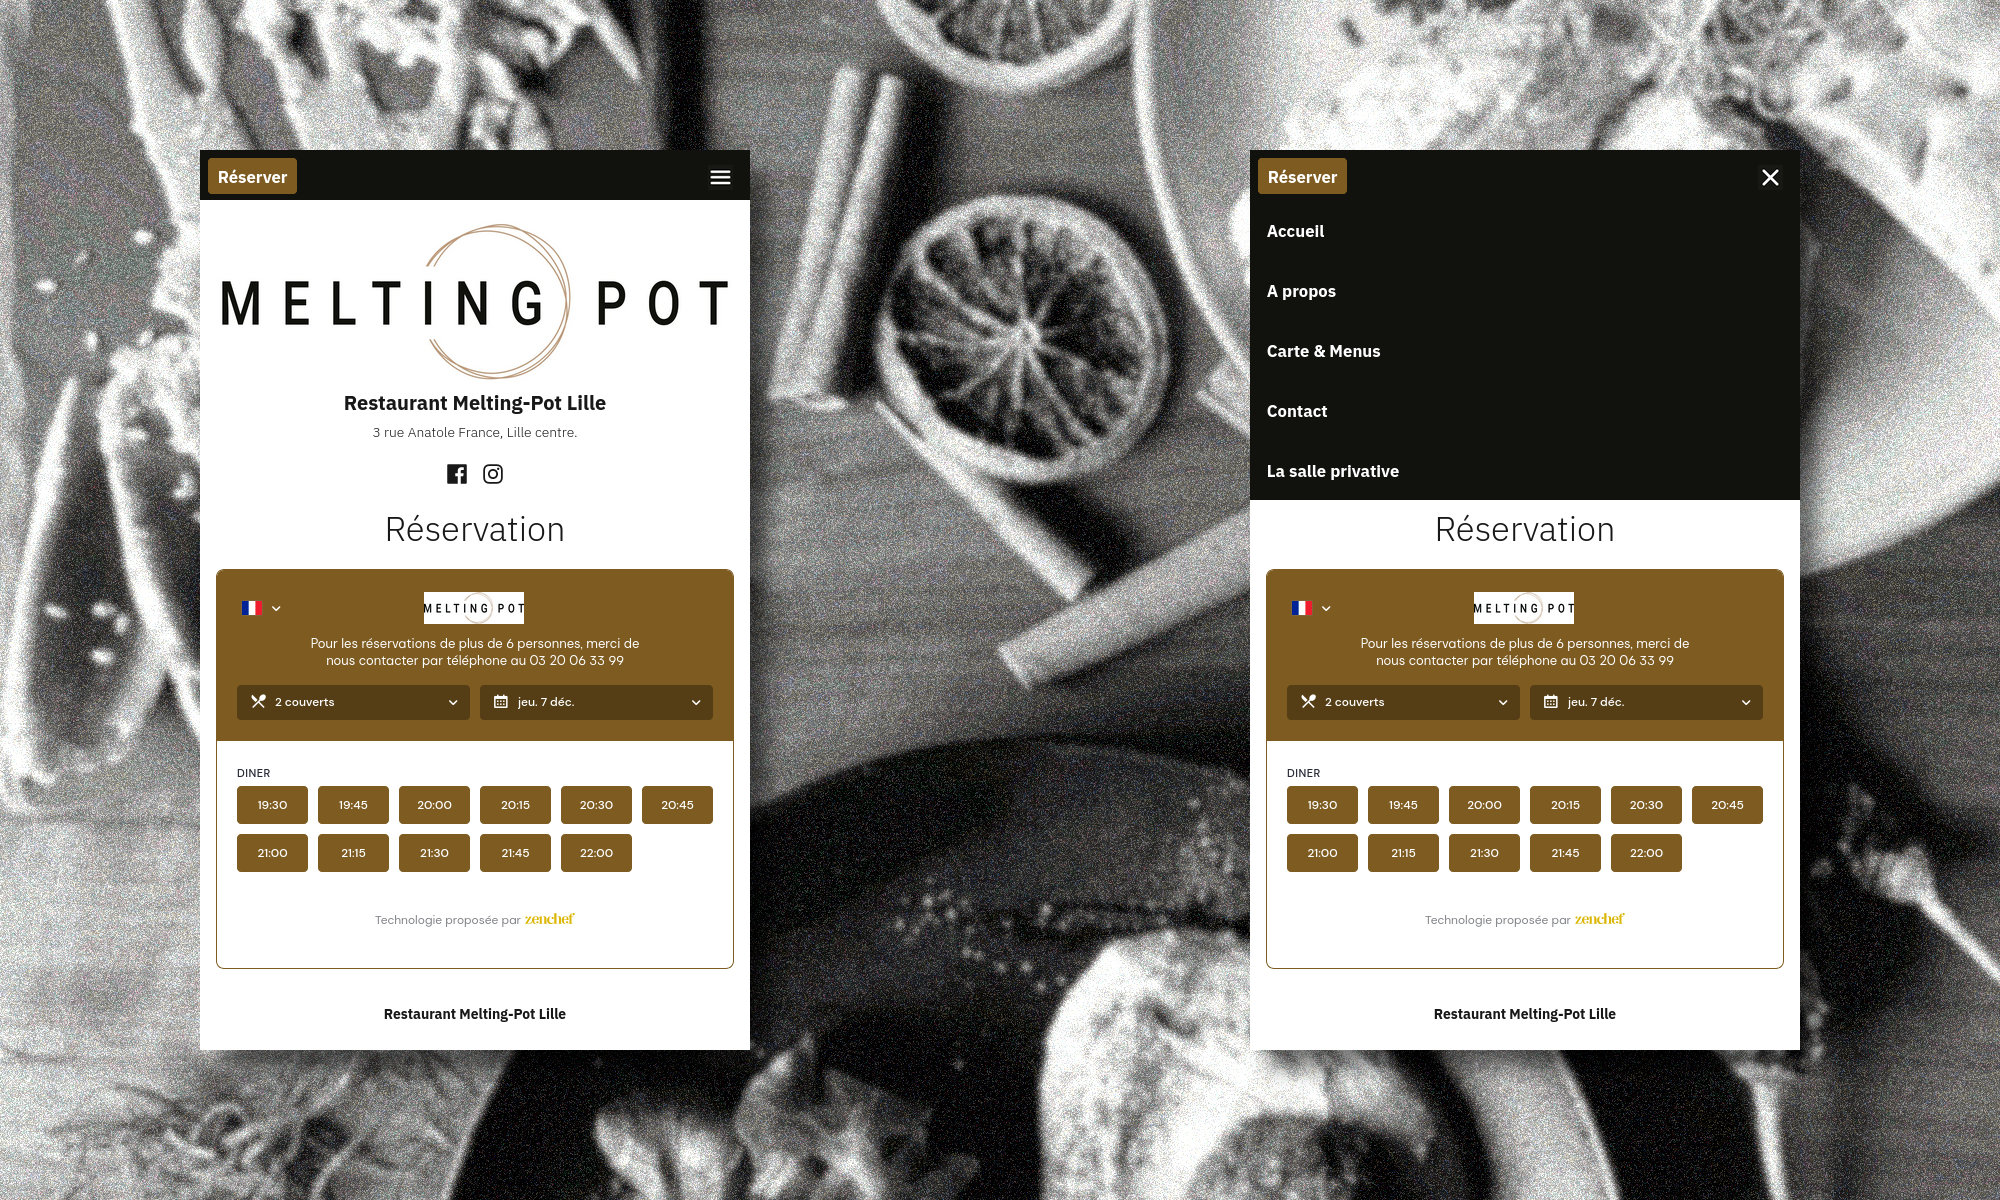 Le site internet du "Melting Pot".